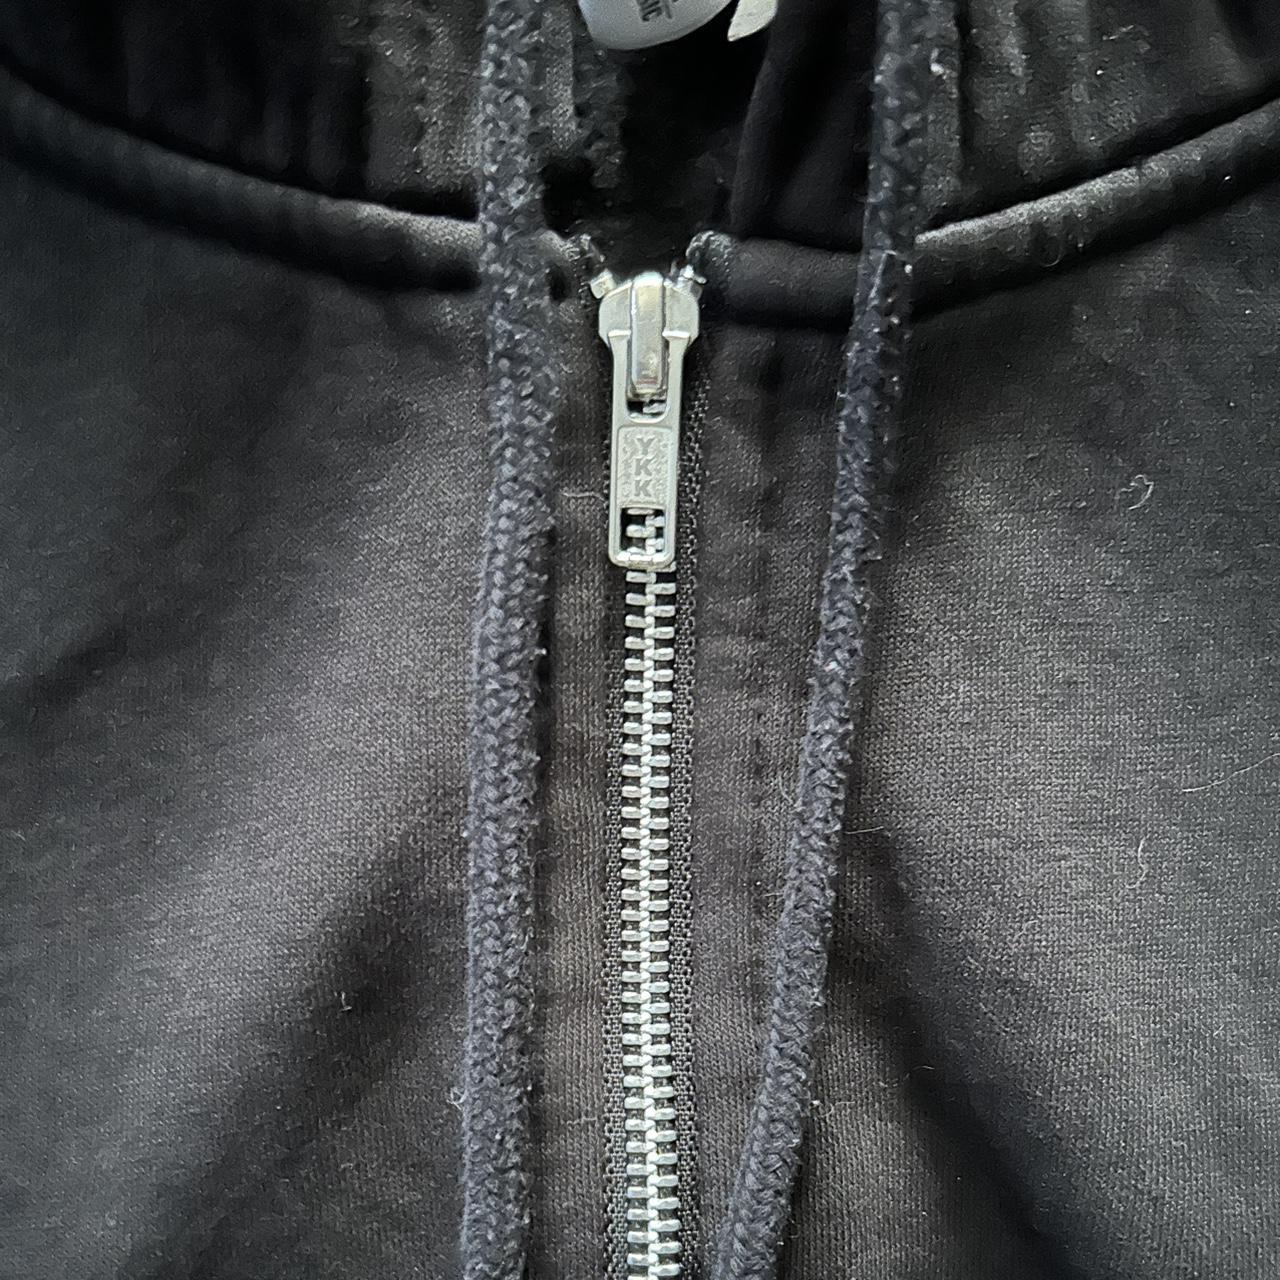 plain black zip up hoodie with drawstrings - Depop